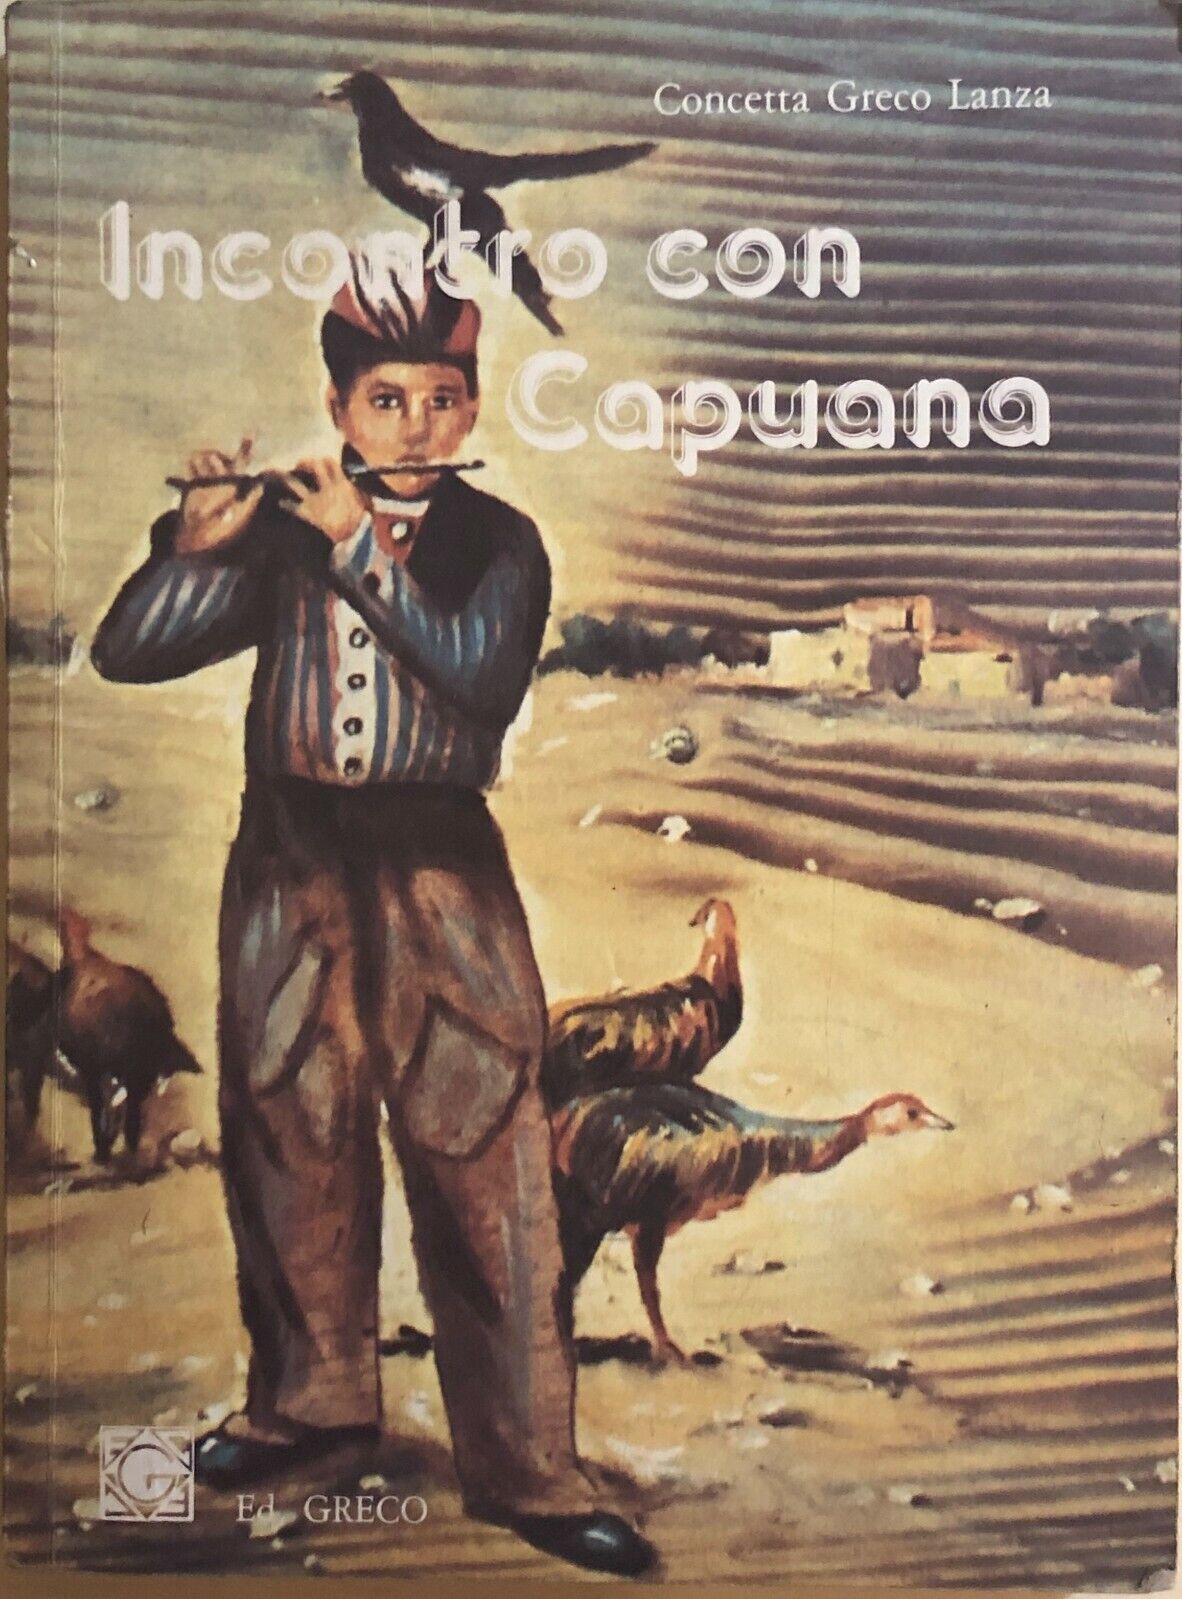 Incontro con Capuana di Concetta Greco Lanza, 1986, Ed. Greco